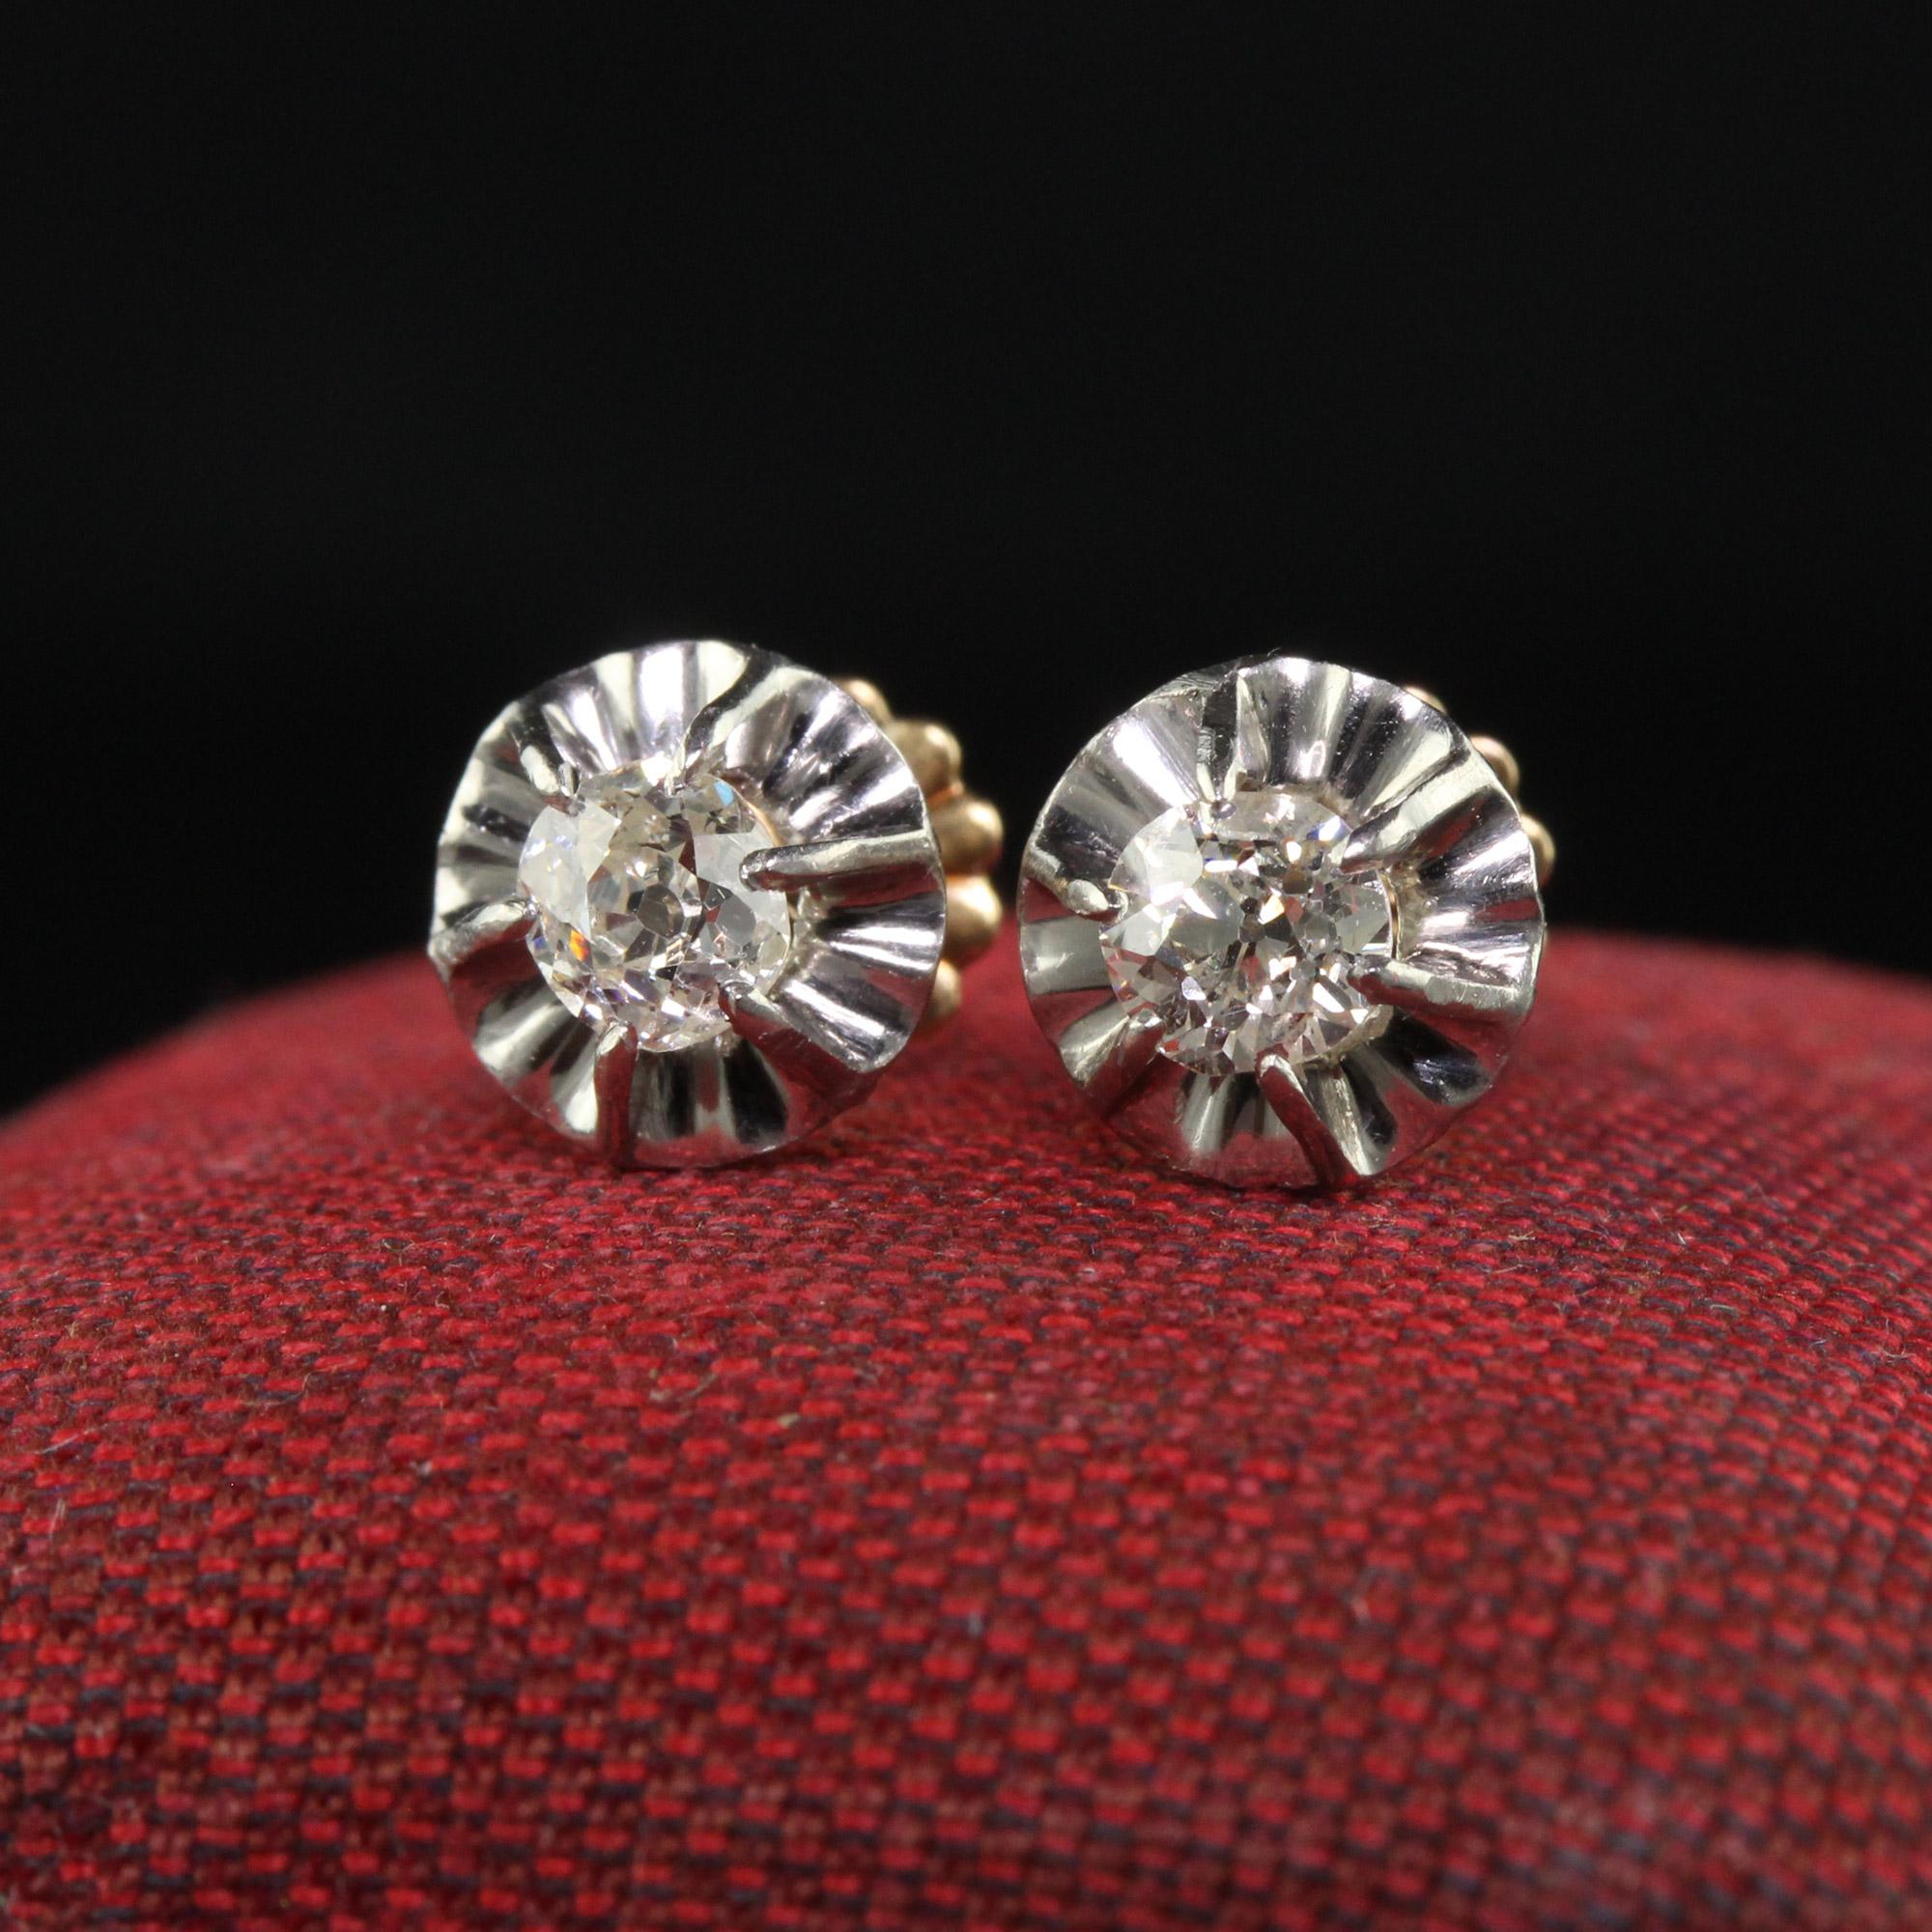 Schöne antike Edwardian 18K Gelbgold und Platin Old Mine Diamond Stud Earrings. Dieses wunderschöne Paar Ohrringe mit Diamanten aus alten Minen ist aus 18 Karat Gelbgold und Platin gefertigt. Die Ohrstecker sind mit klobigen Diamanten im